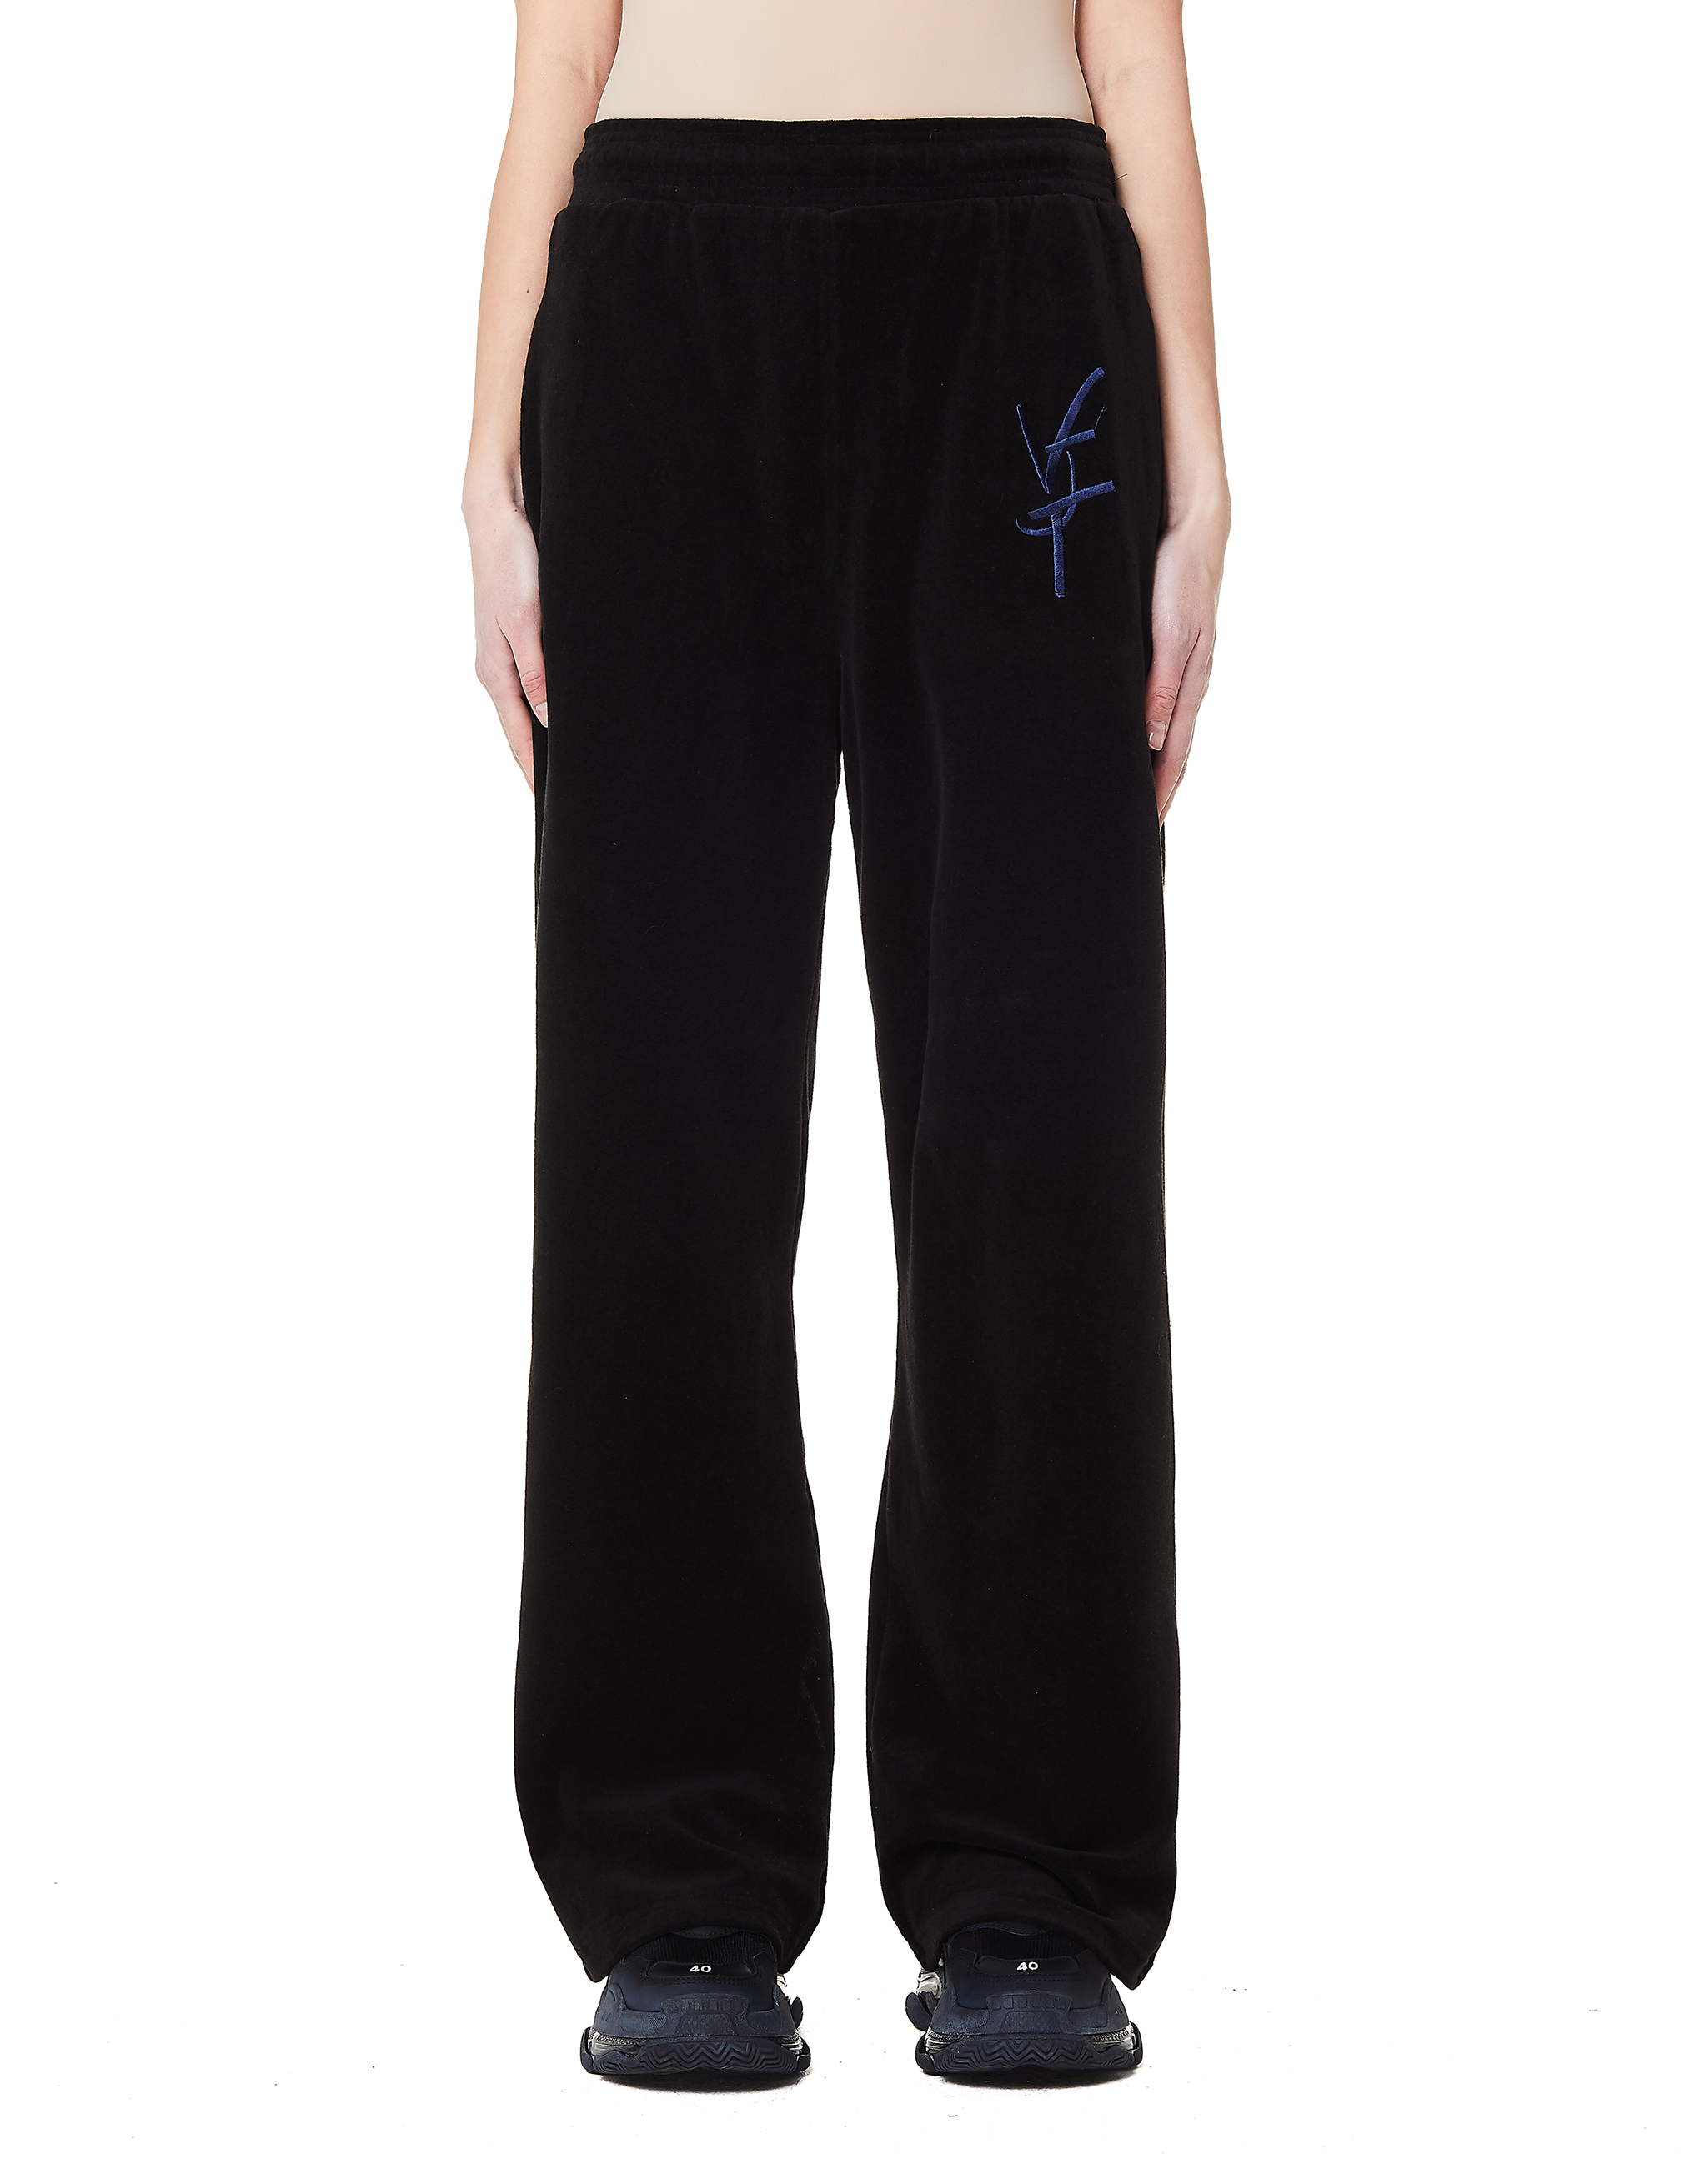 Велюровые брюки для дома Velvet loungewear LHW 1010. Toni брюки филюревые женские. Брюки велюровые. Велюровые штаны. Куплю велюровые брюки